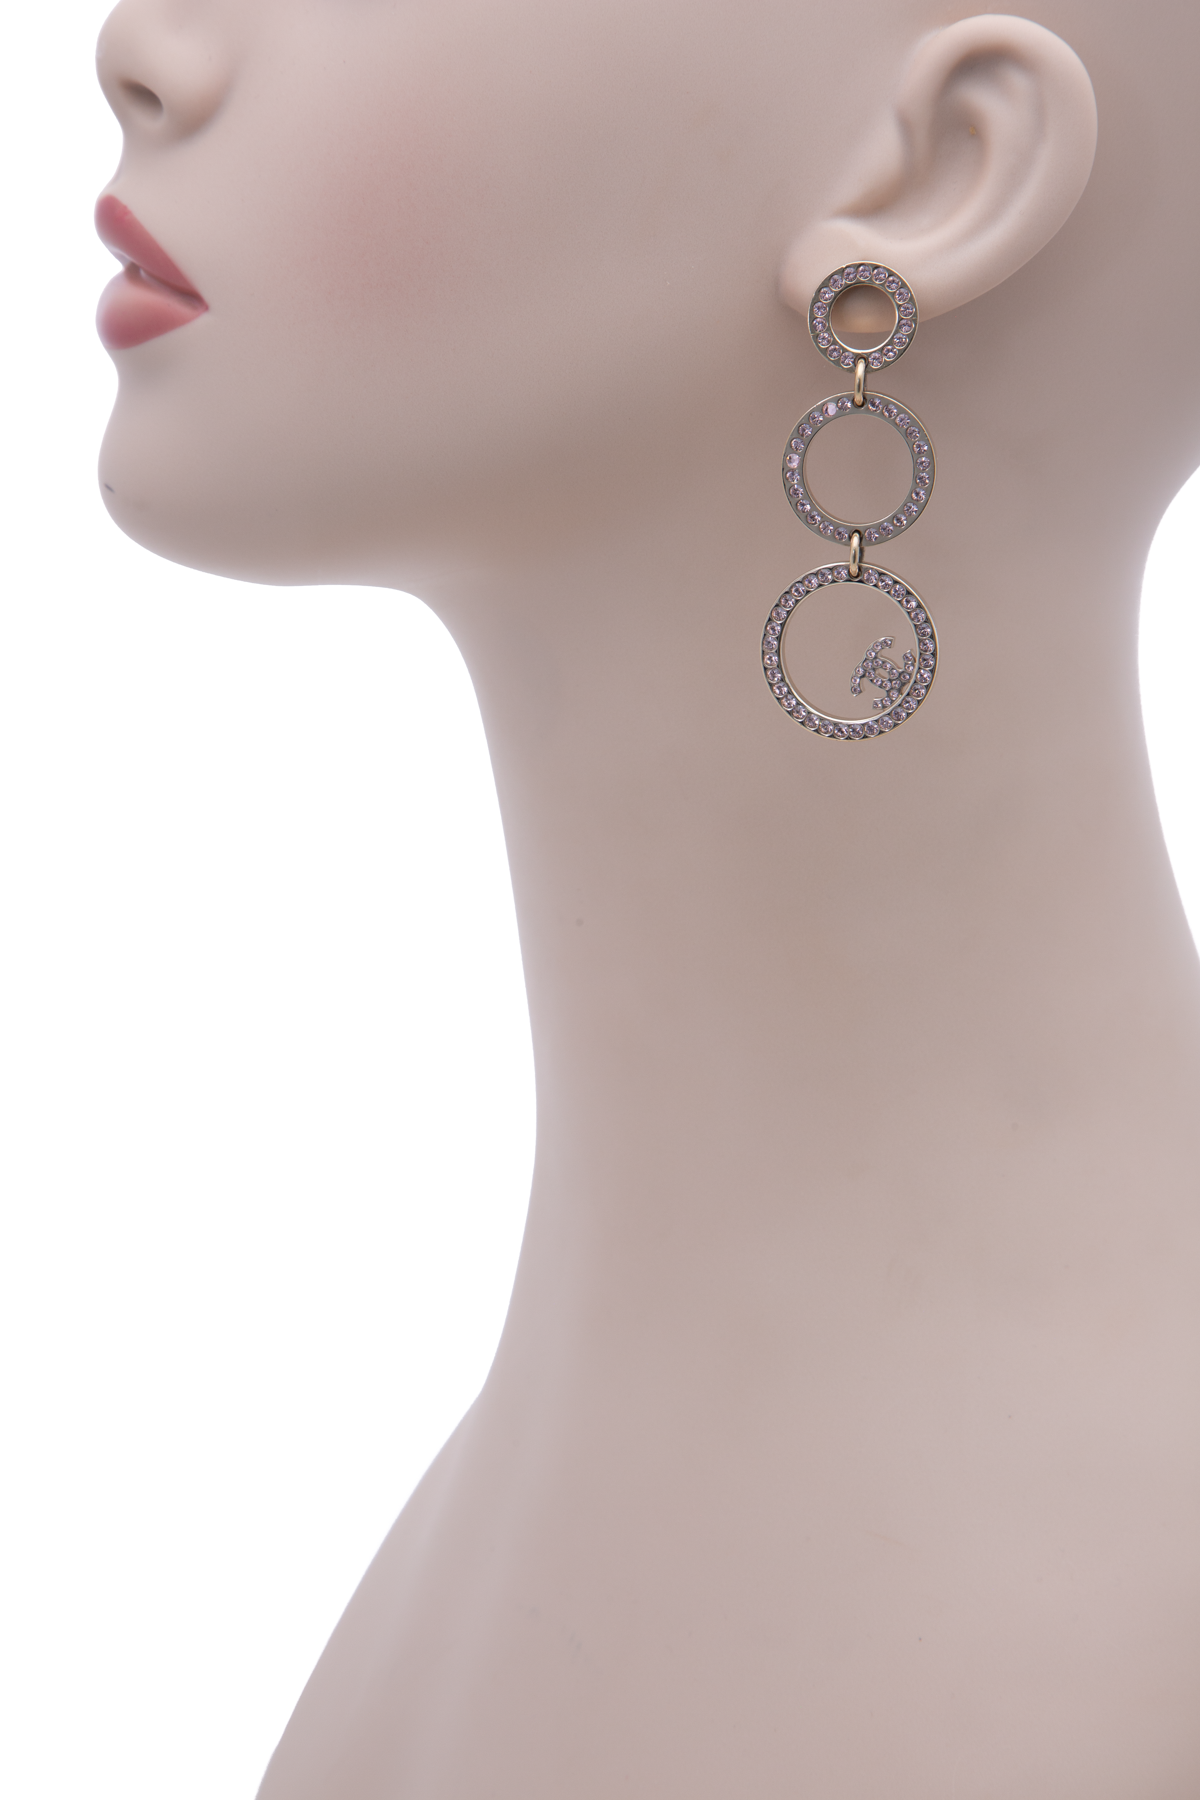 chanel earrings long silver chain